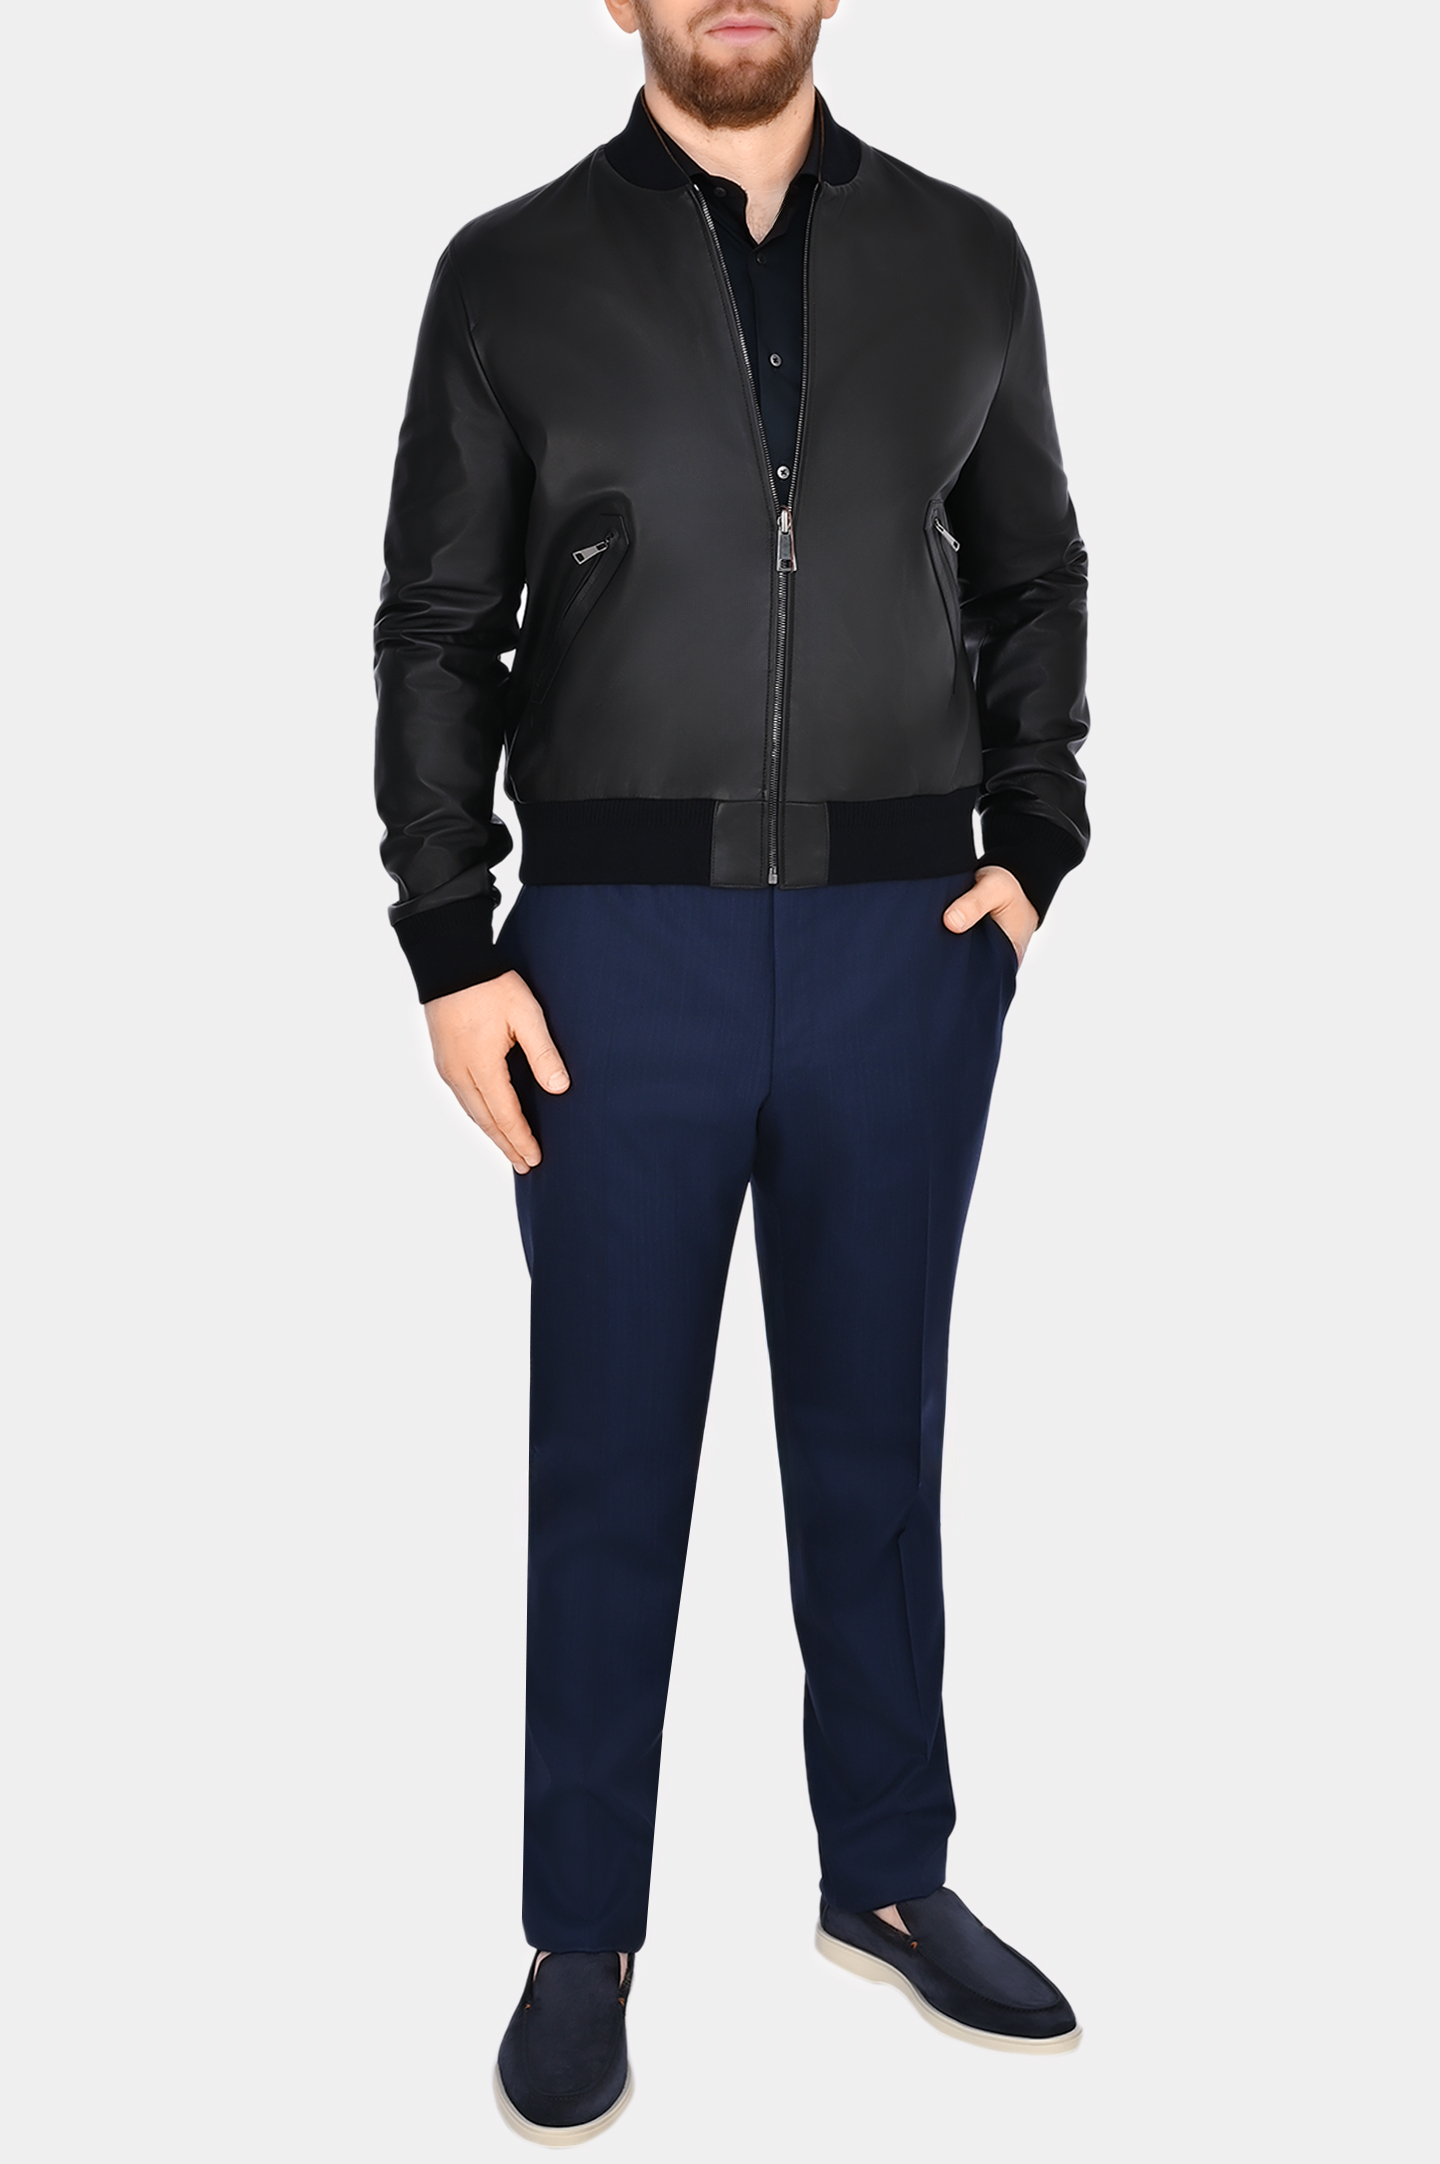 Кожаная куртка двухсторонняя CANALI LE00258 O70409, цвет: Черный, Мужской